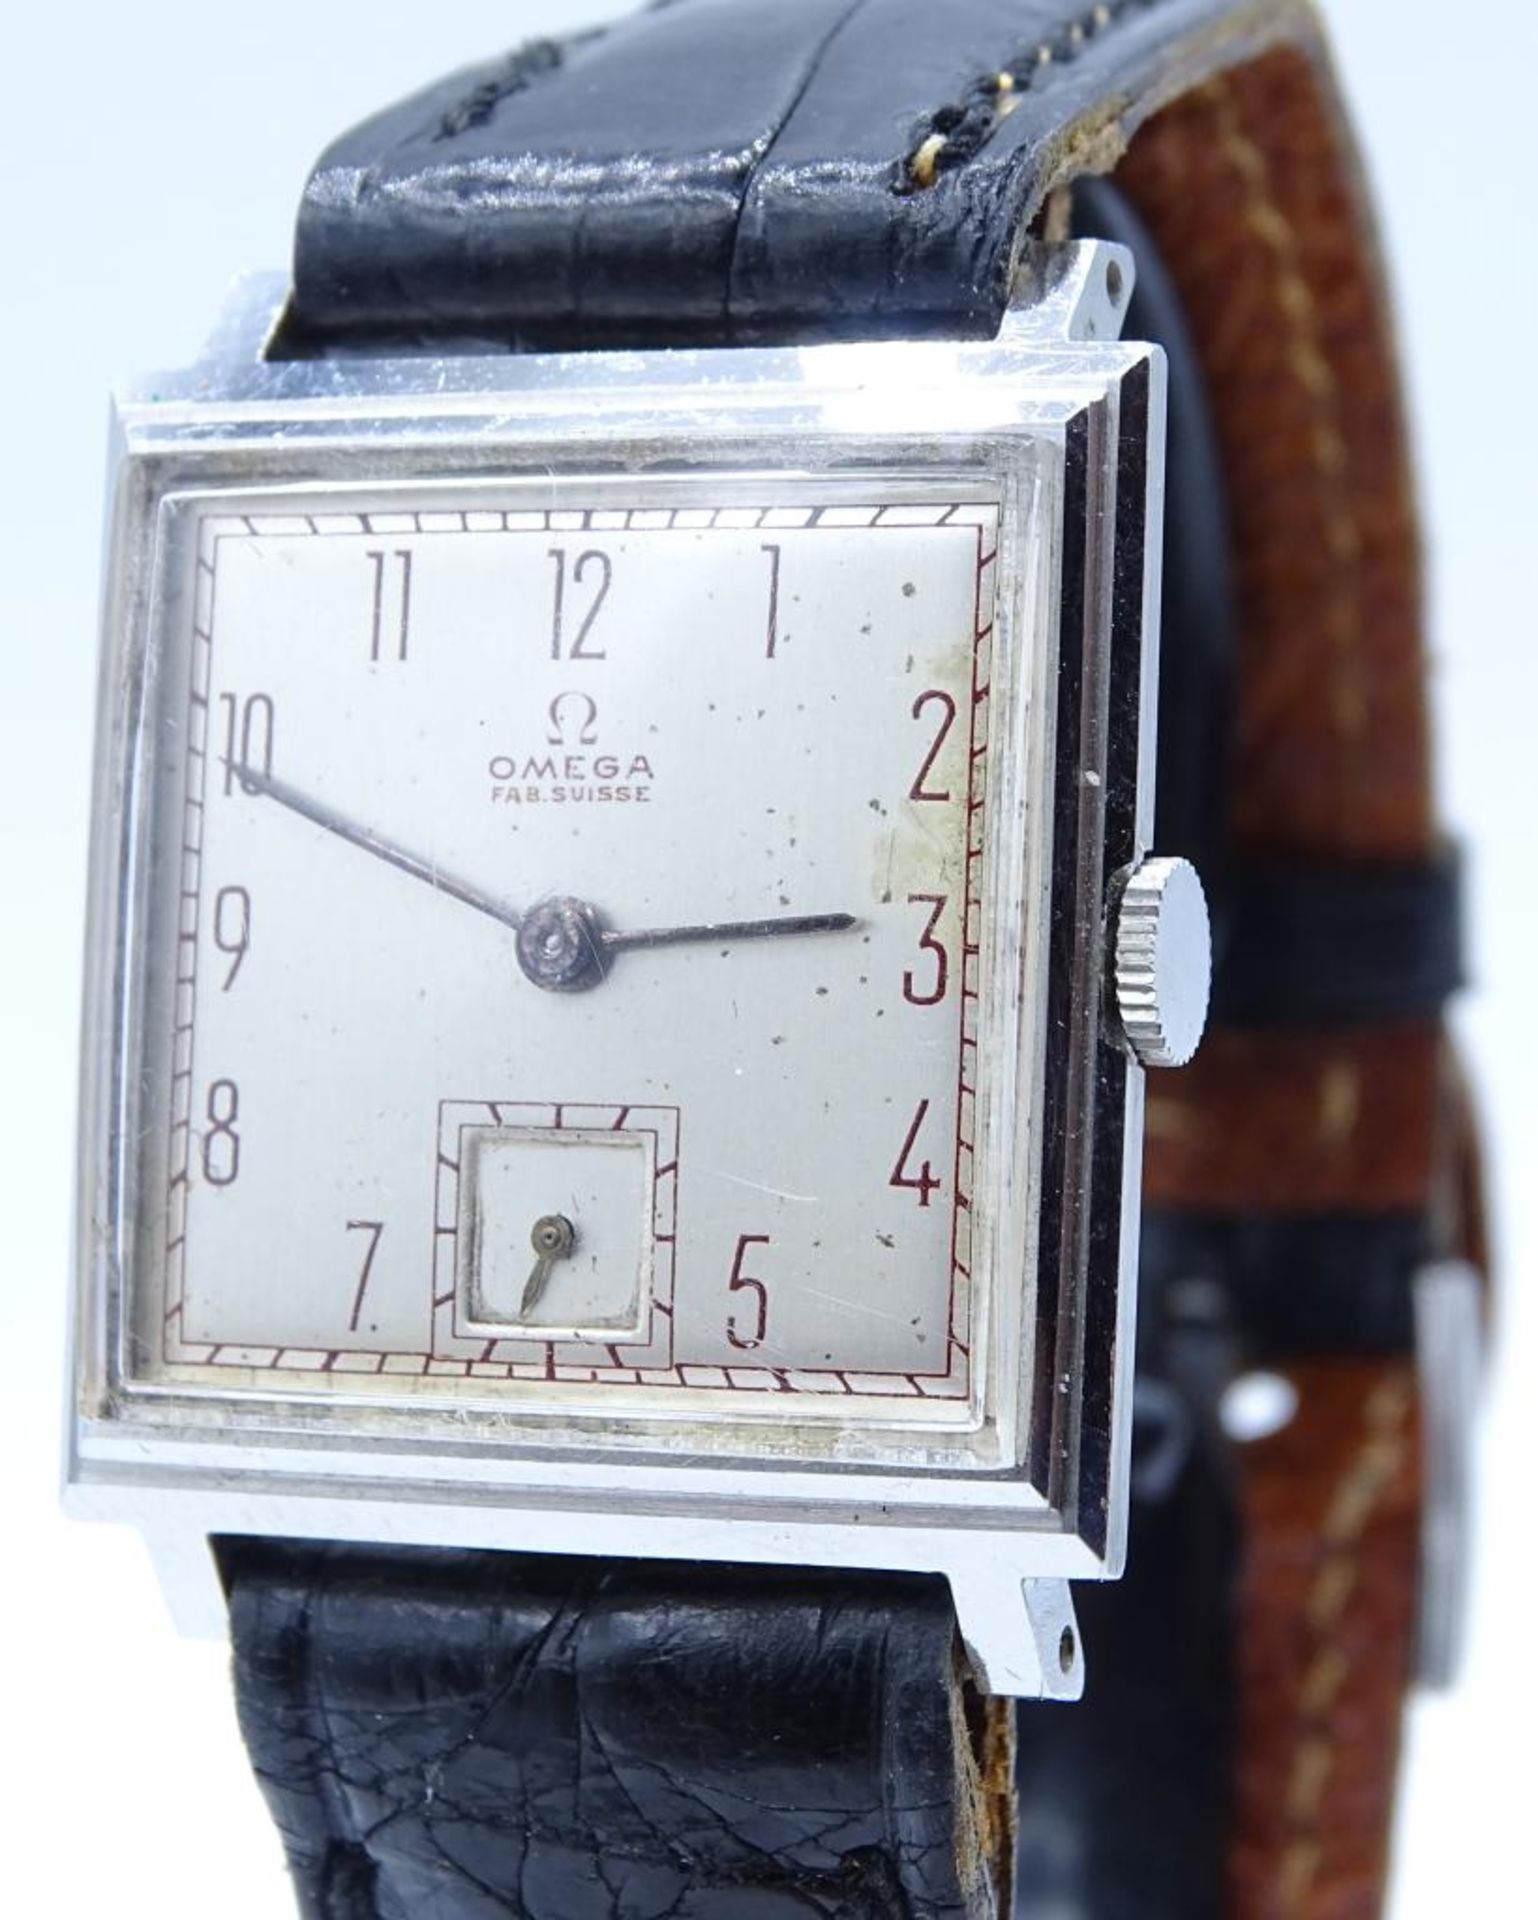 Vintage Armbanduhr "OMEGA",Fab.Suisse,mechanisch,Werk läuft,Edelstahl,Gehäuse 27x25mm,auf Werk Nr. - Bild 4 aus 8